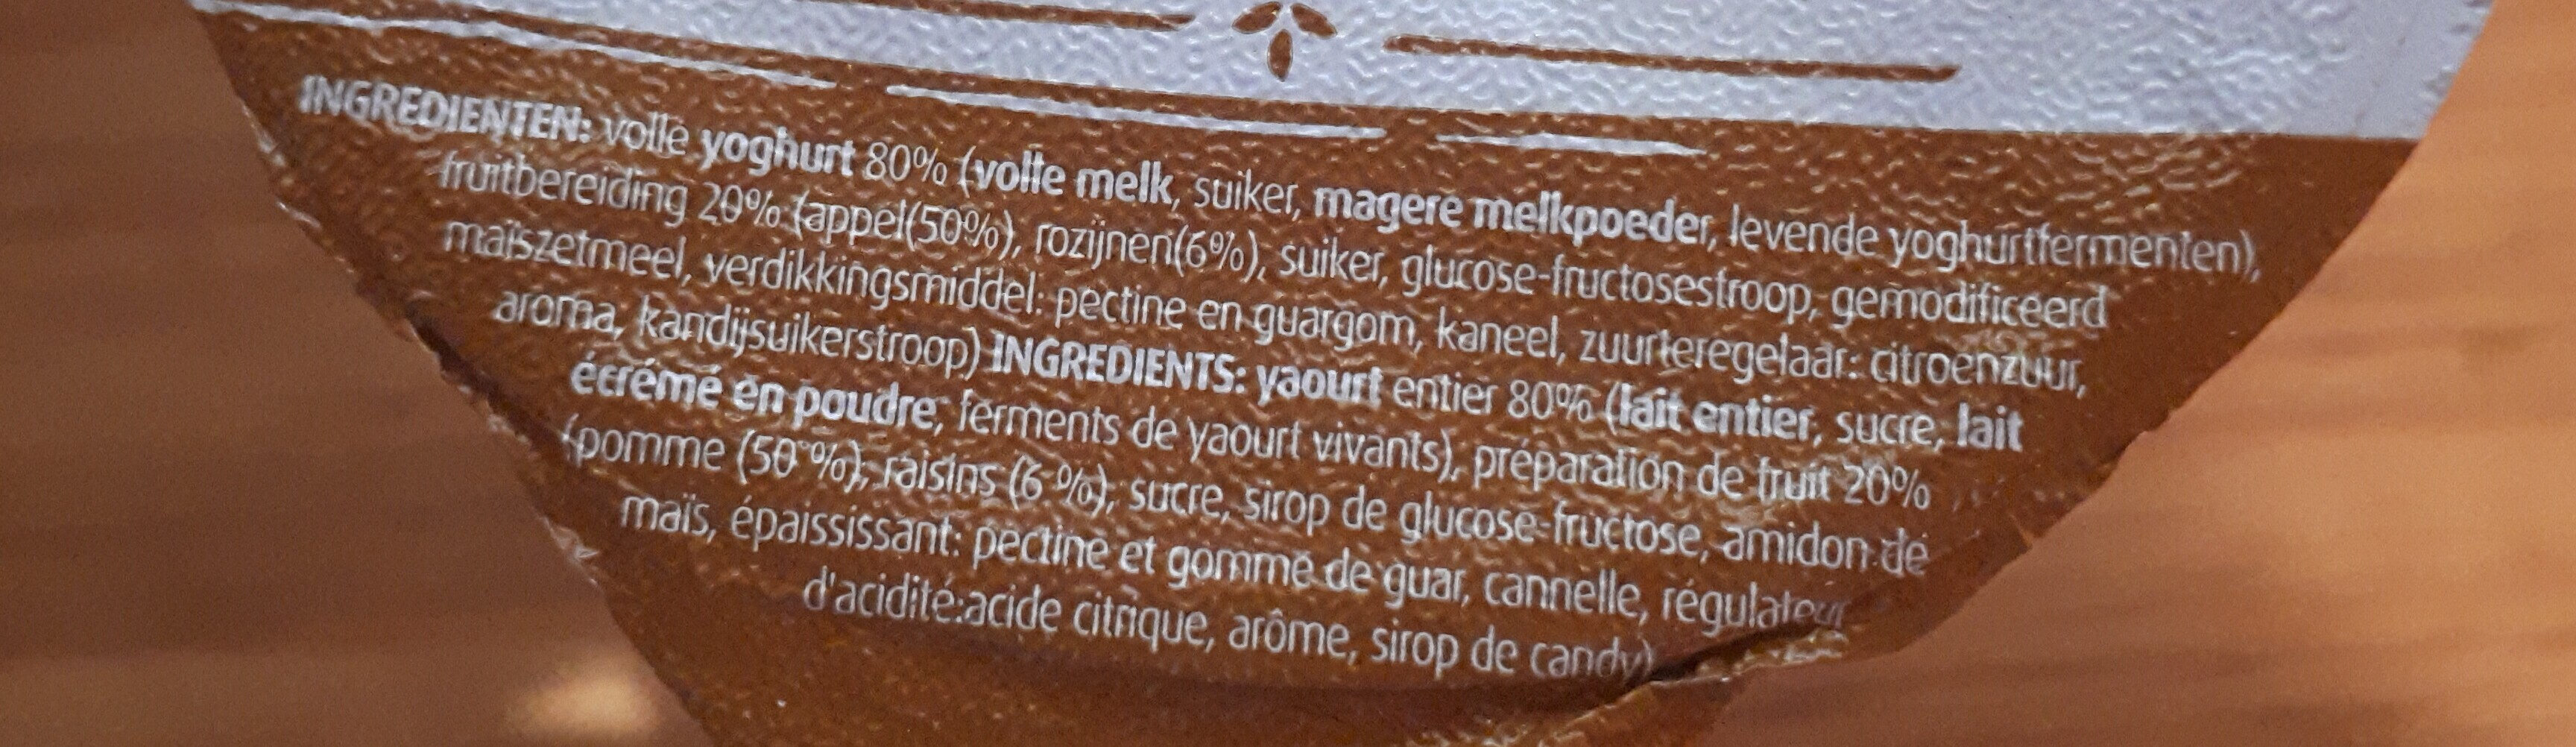 Yoghurt Appel, rozijnen en kaneel - Ingrédients